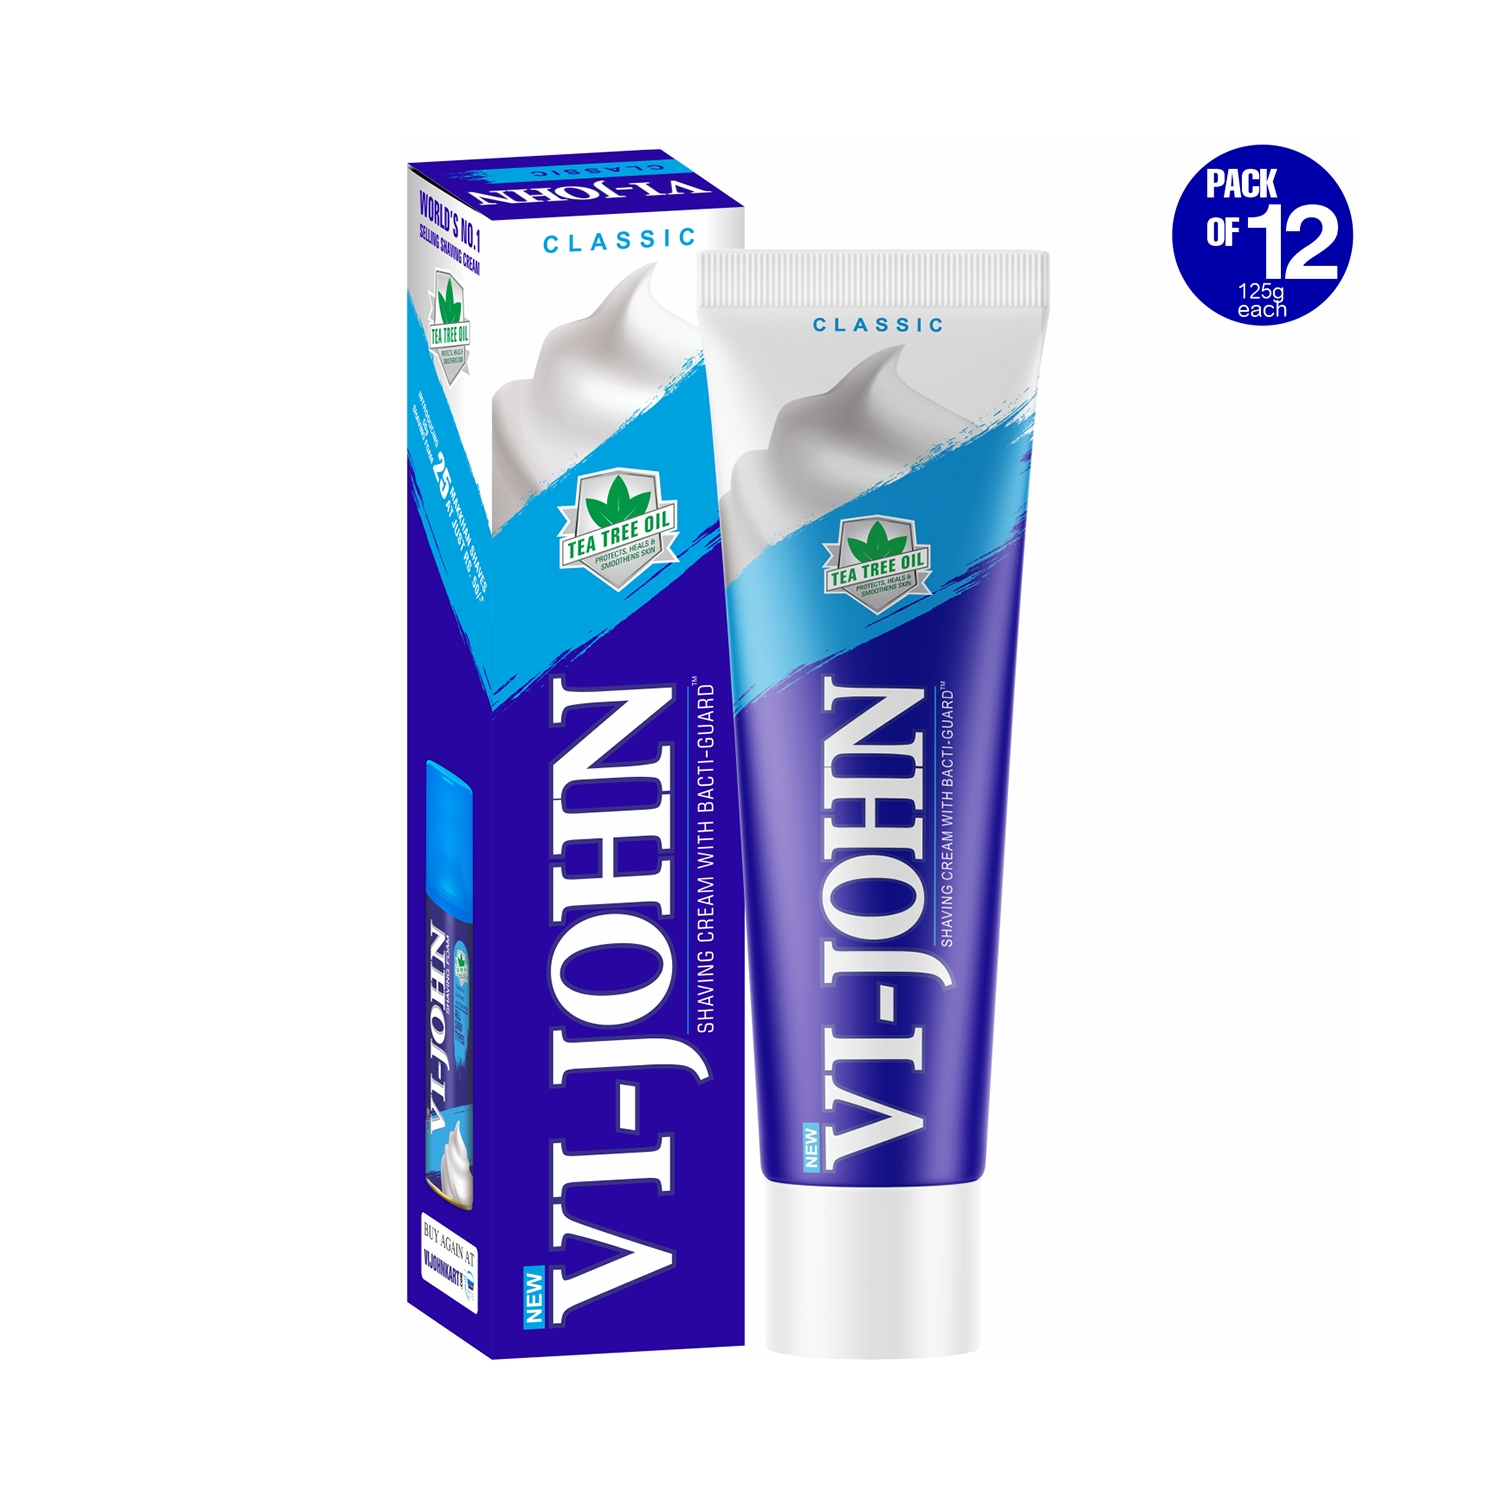 VI-JOHN | VI-JOHN Classical Bacti-Guard Shaving Cream (Pack of 12)